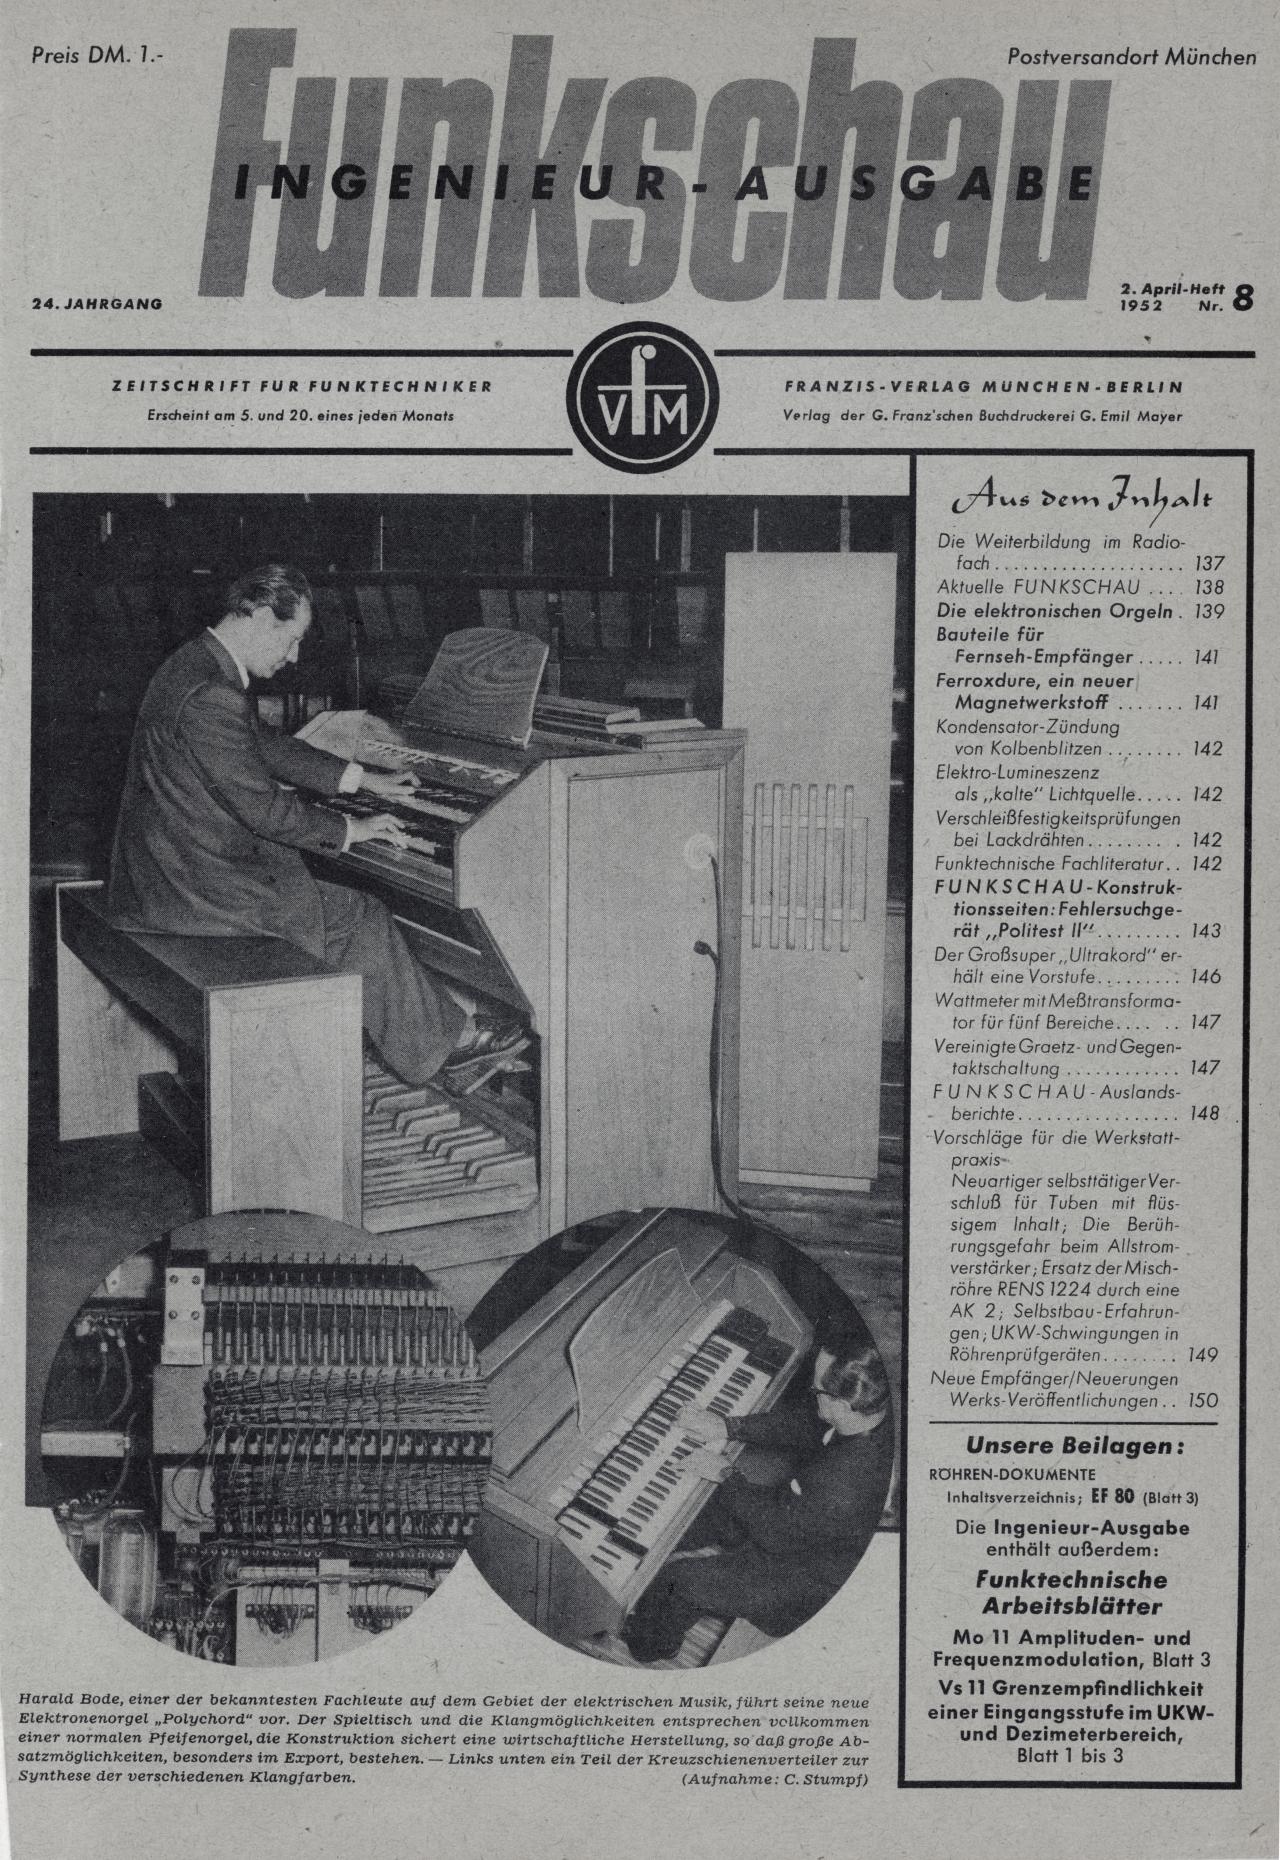 Harald Bode: »Die elektronischen Orgeln« (1952)